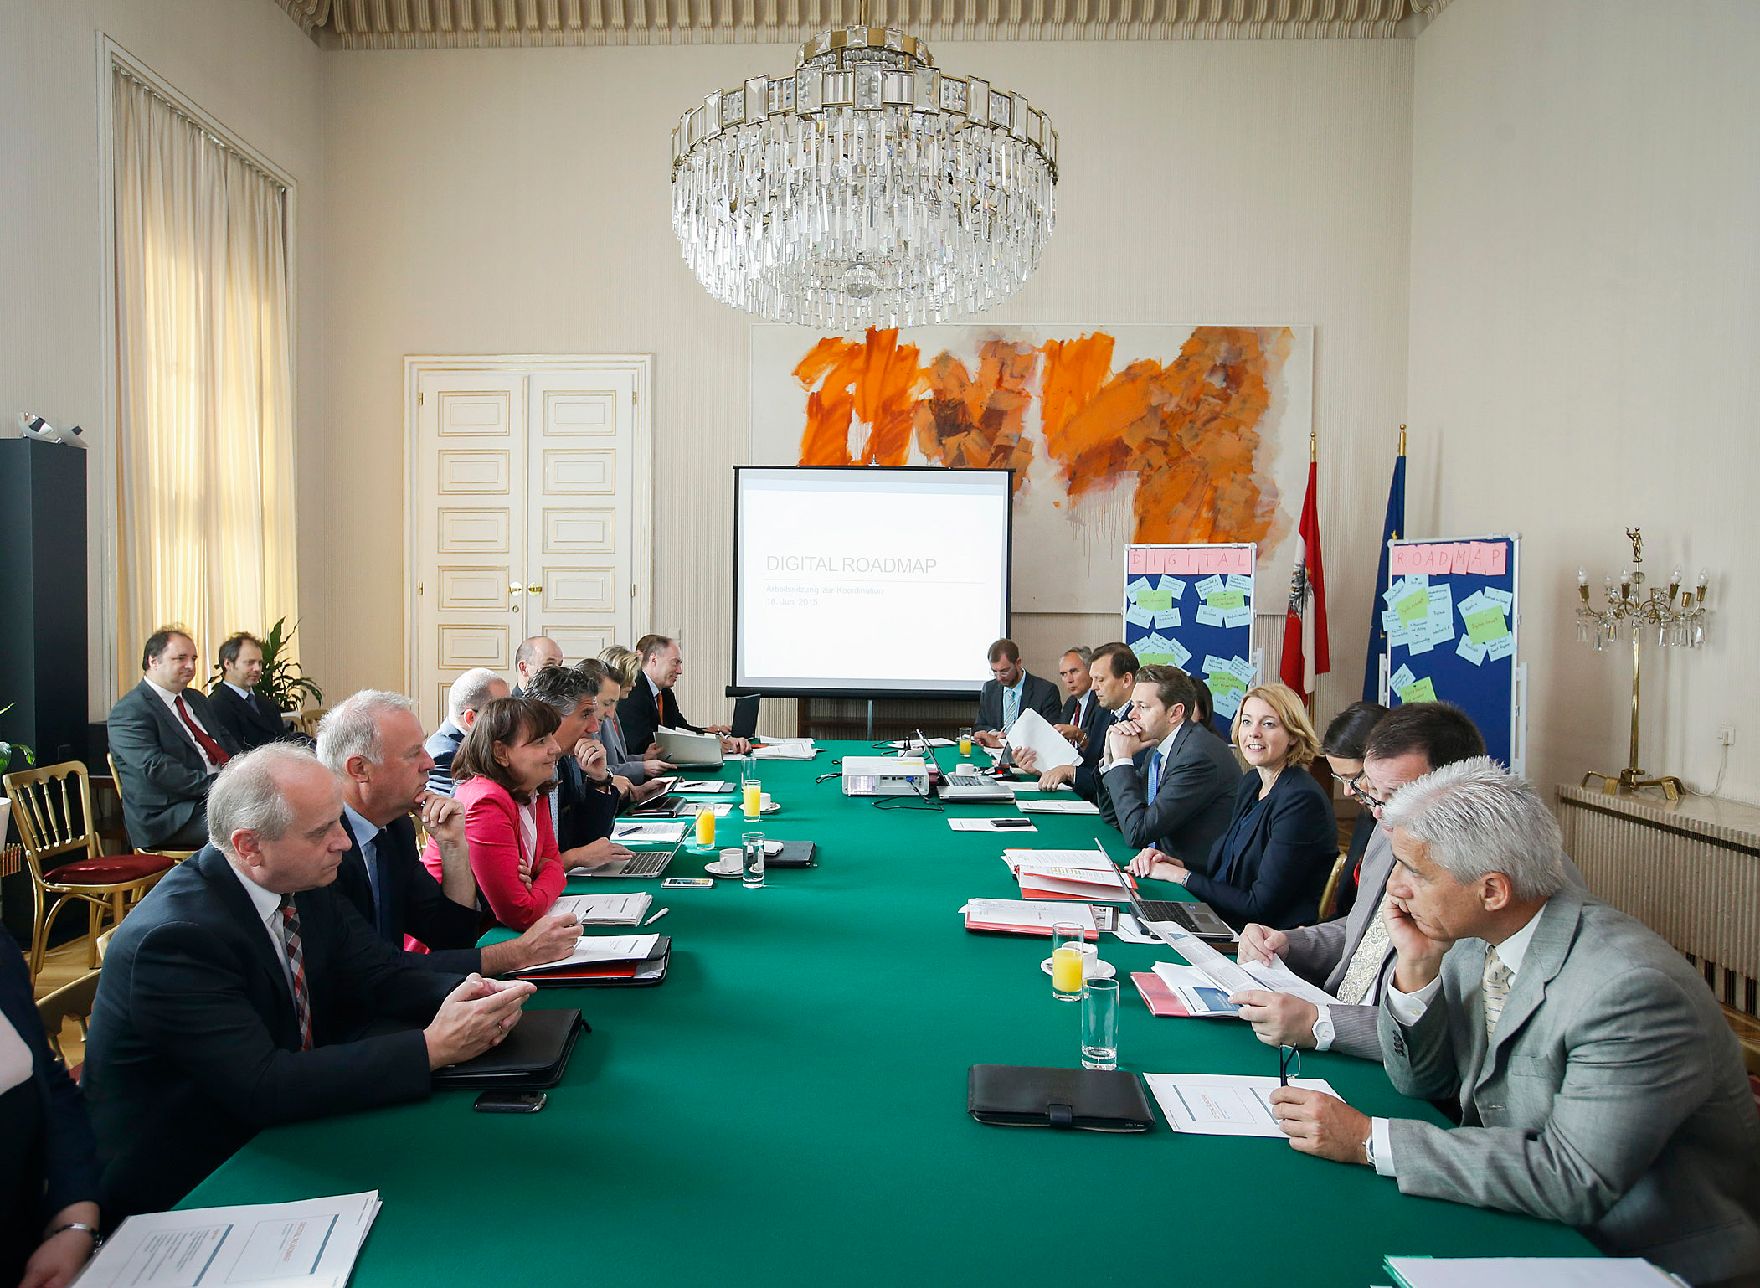 Am 18. Juni 2015 lud Staatssekretärin Sonja Steßl gemeinsam mit Staatssekretär Harald Mahrer Vertreter und Vertreterinnen der Bundesministerien zur 1. Arbeitssitzung der Koordinierung einer Digitalen Roadmap der Bundesregierung ein.